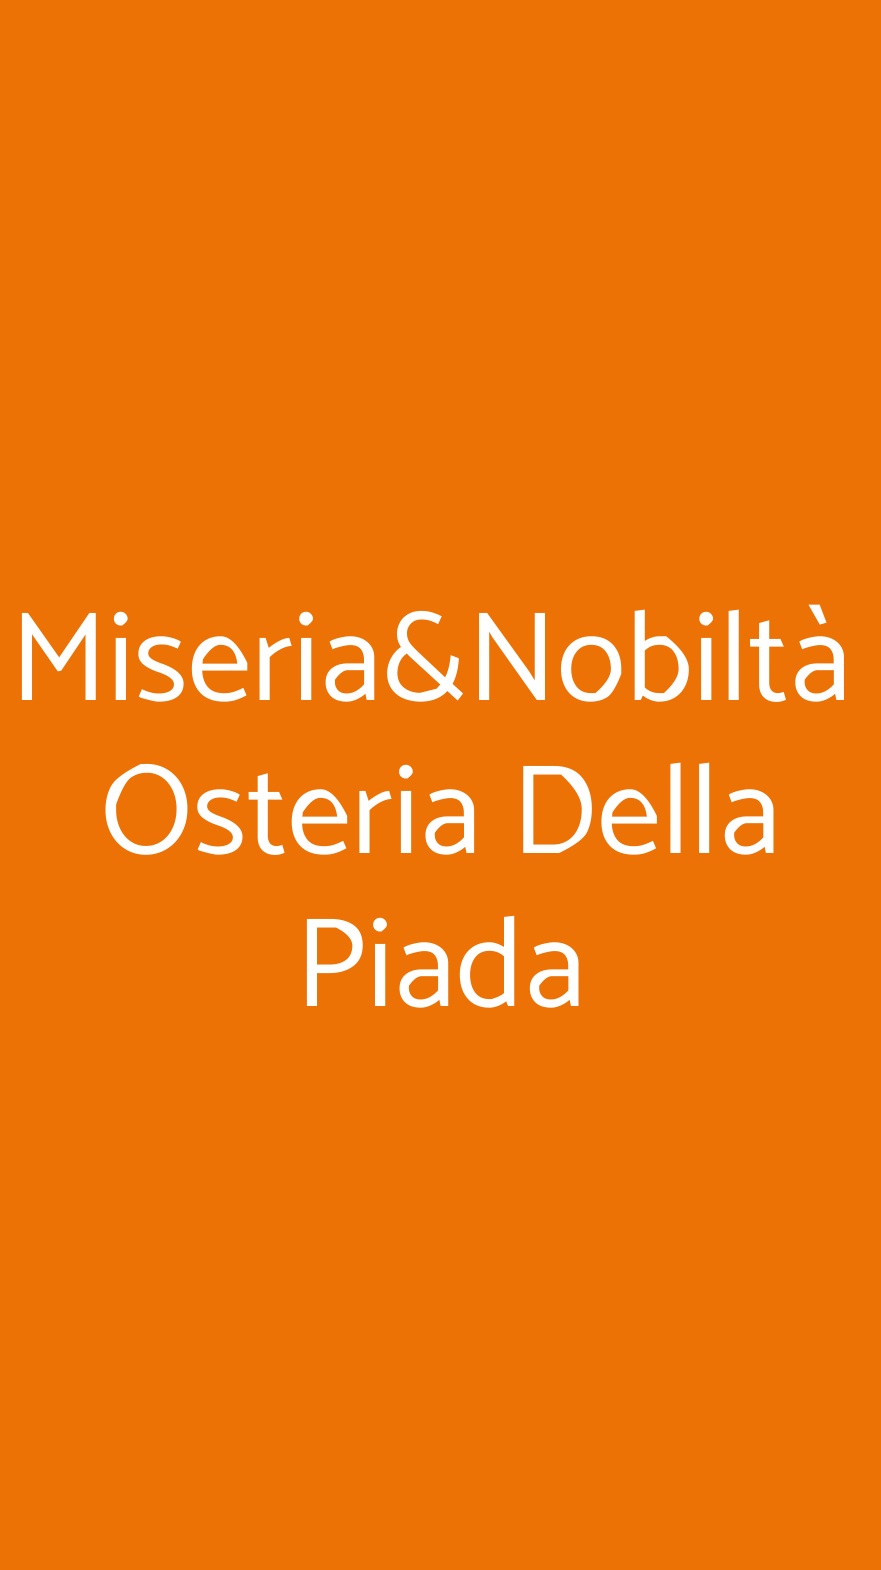 Miseria&Nobiltà  Osteria Della Piada Rimini menù 1 pagina